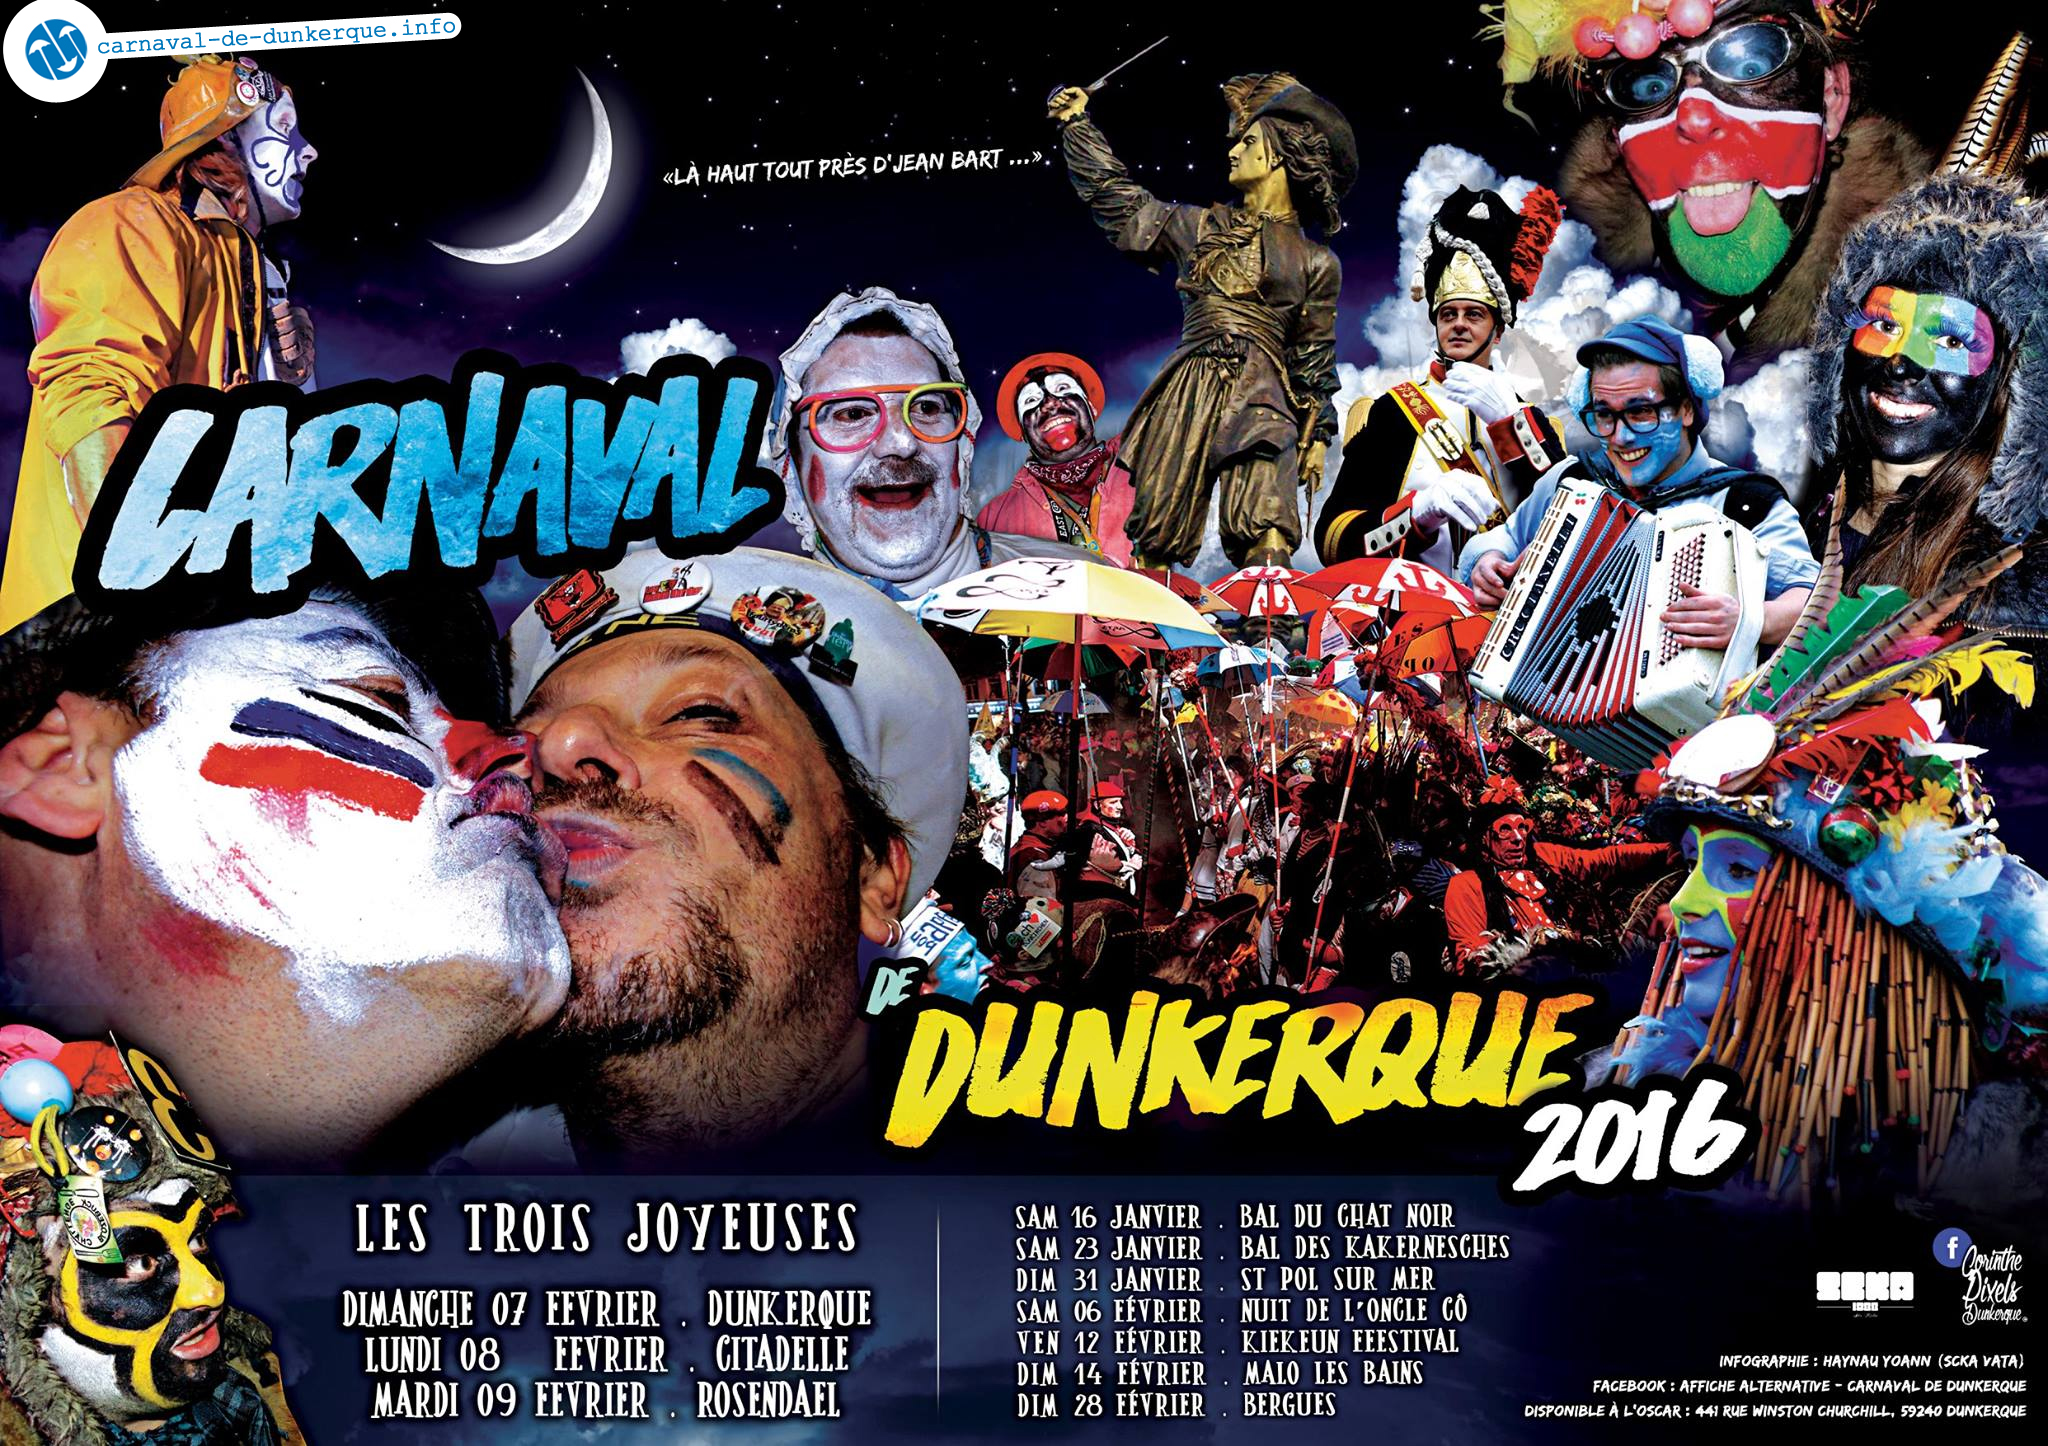 Affiche Carnaval 2016 par Scka